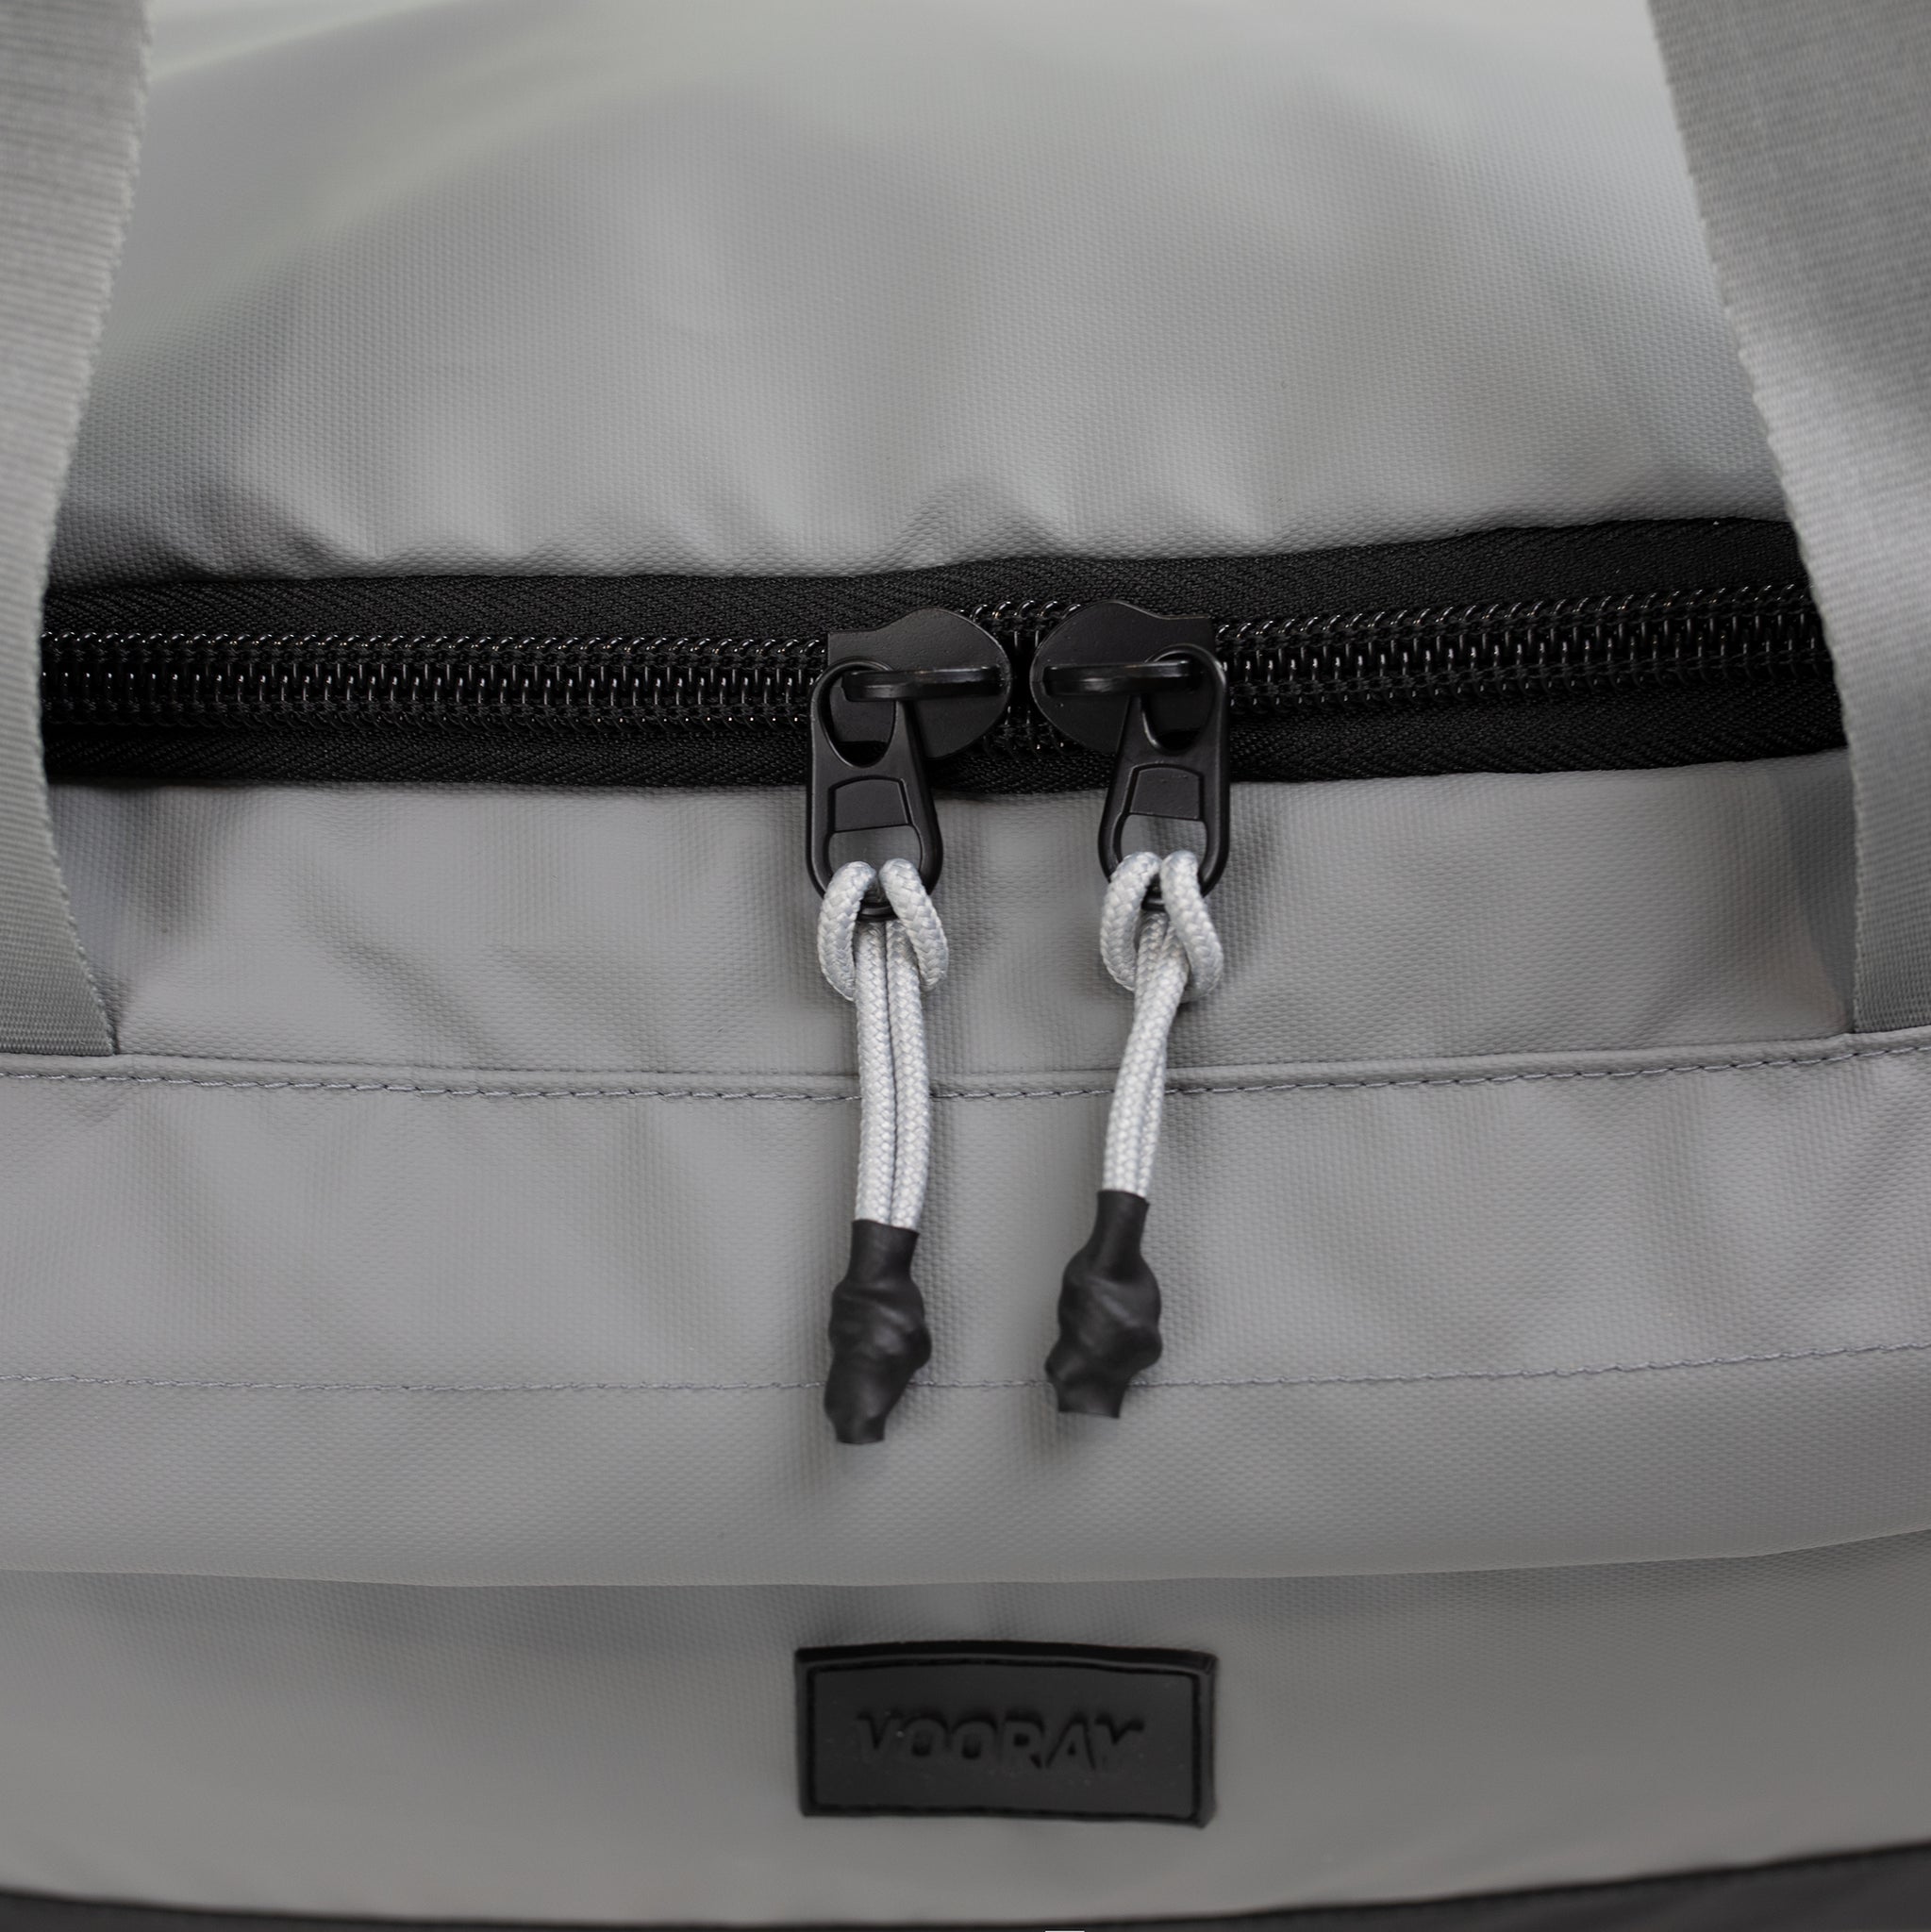 Vooray Boost Duffel 22L - 43.2 cm - 22L - Grand sac de sport imperméable avec compartiment à chaussures, poches pour accessoires, sac de voyage de première qualité pour le week-end (Abstract Camo)